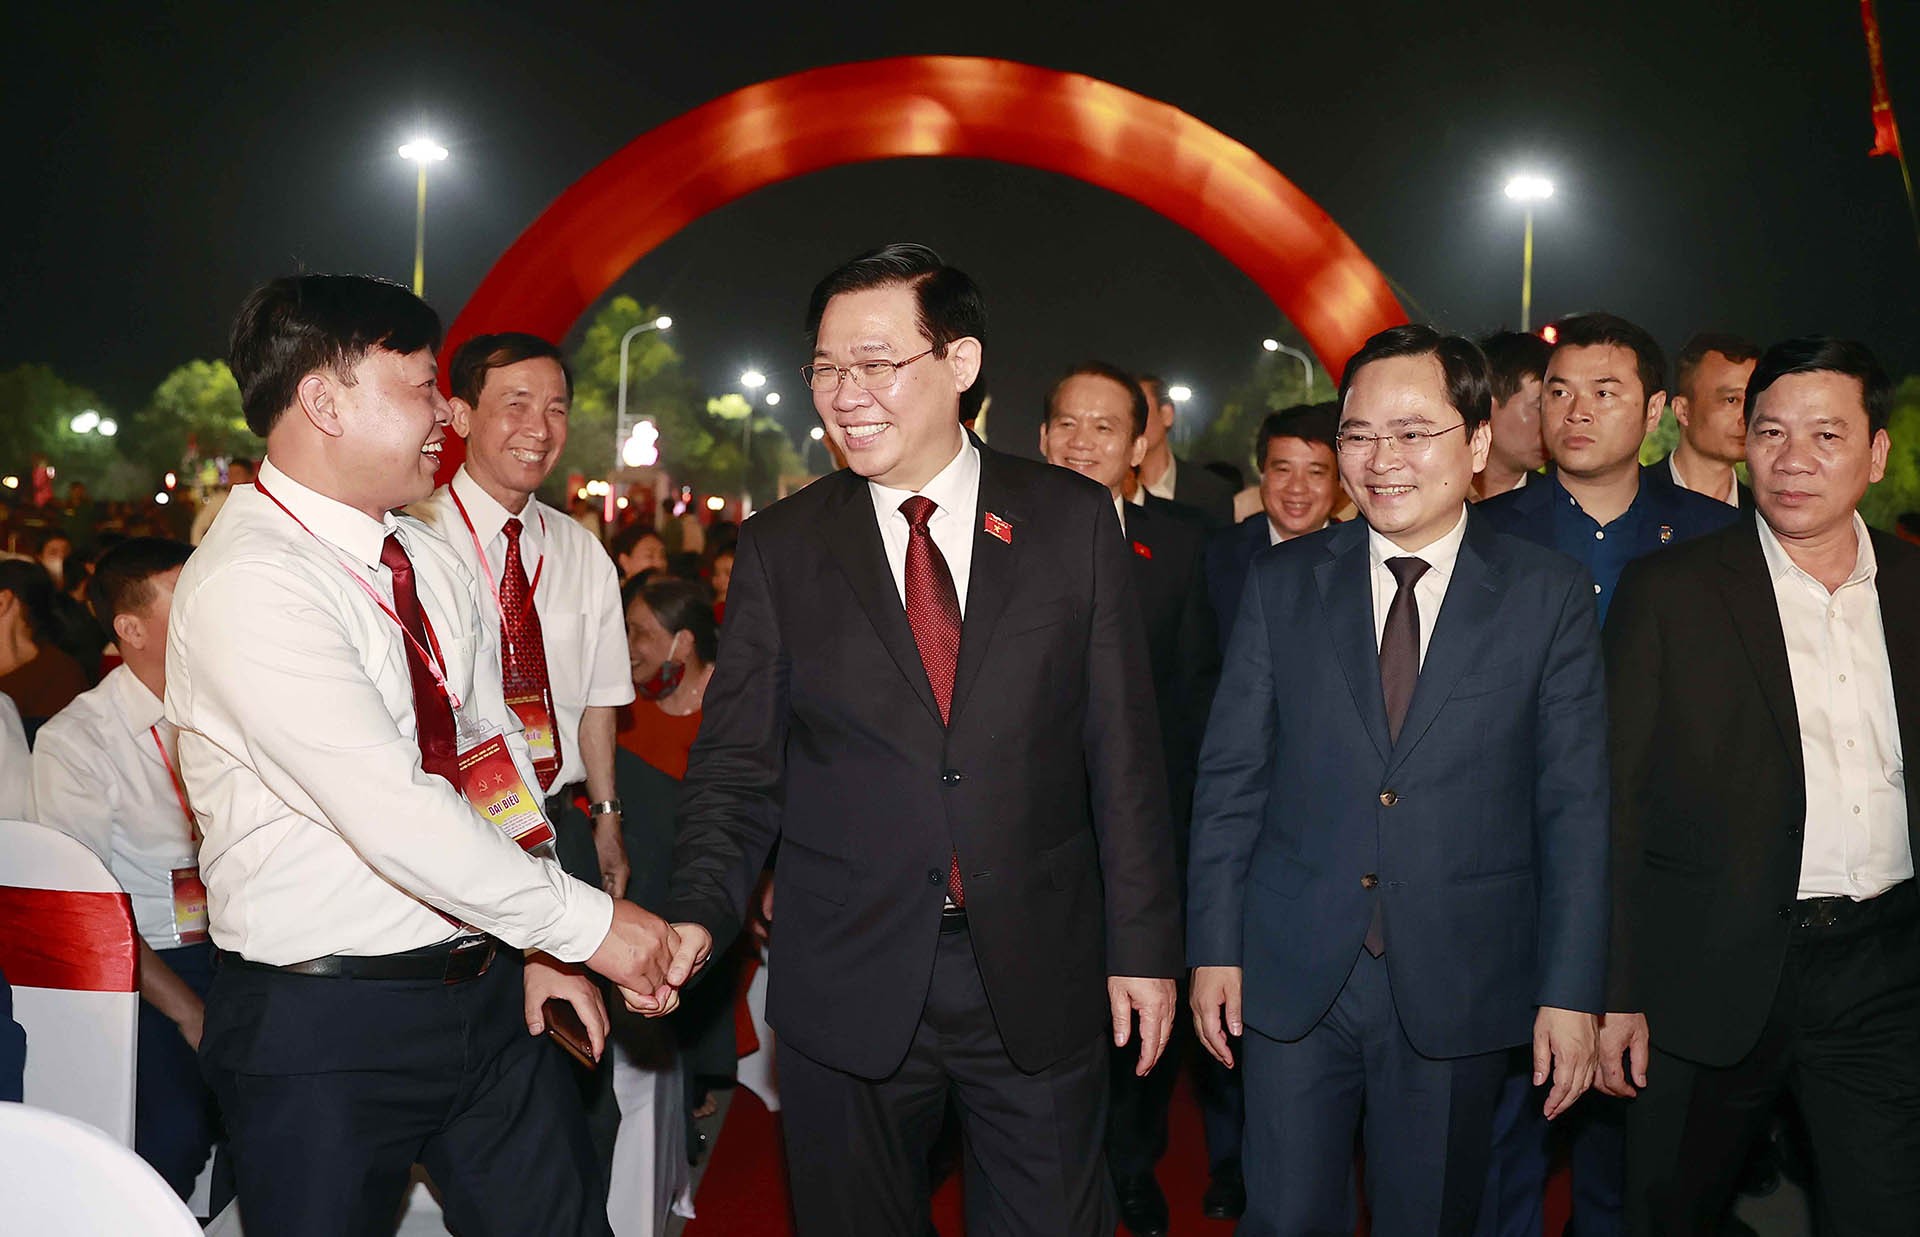 Chủ tịch Quốc hội Vương Đình Huệ, Bí thư Tỉnh ủy Bắc Ninh Nguyễn Anh Tuấn cùng các đại biểu tham dự buổi lễ. (Nguồn: Quốc hội)